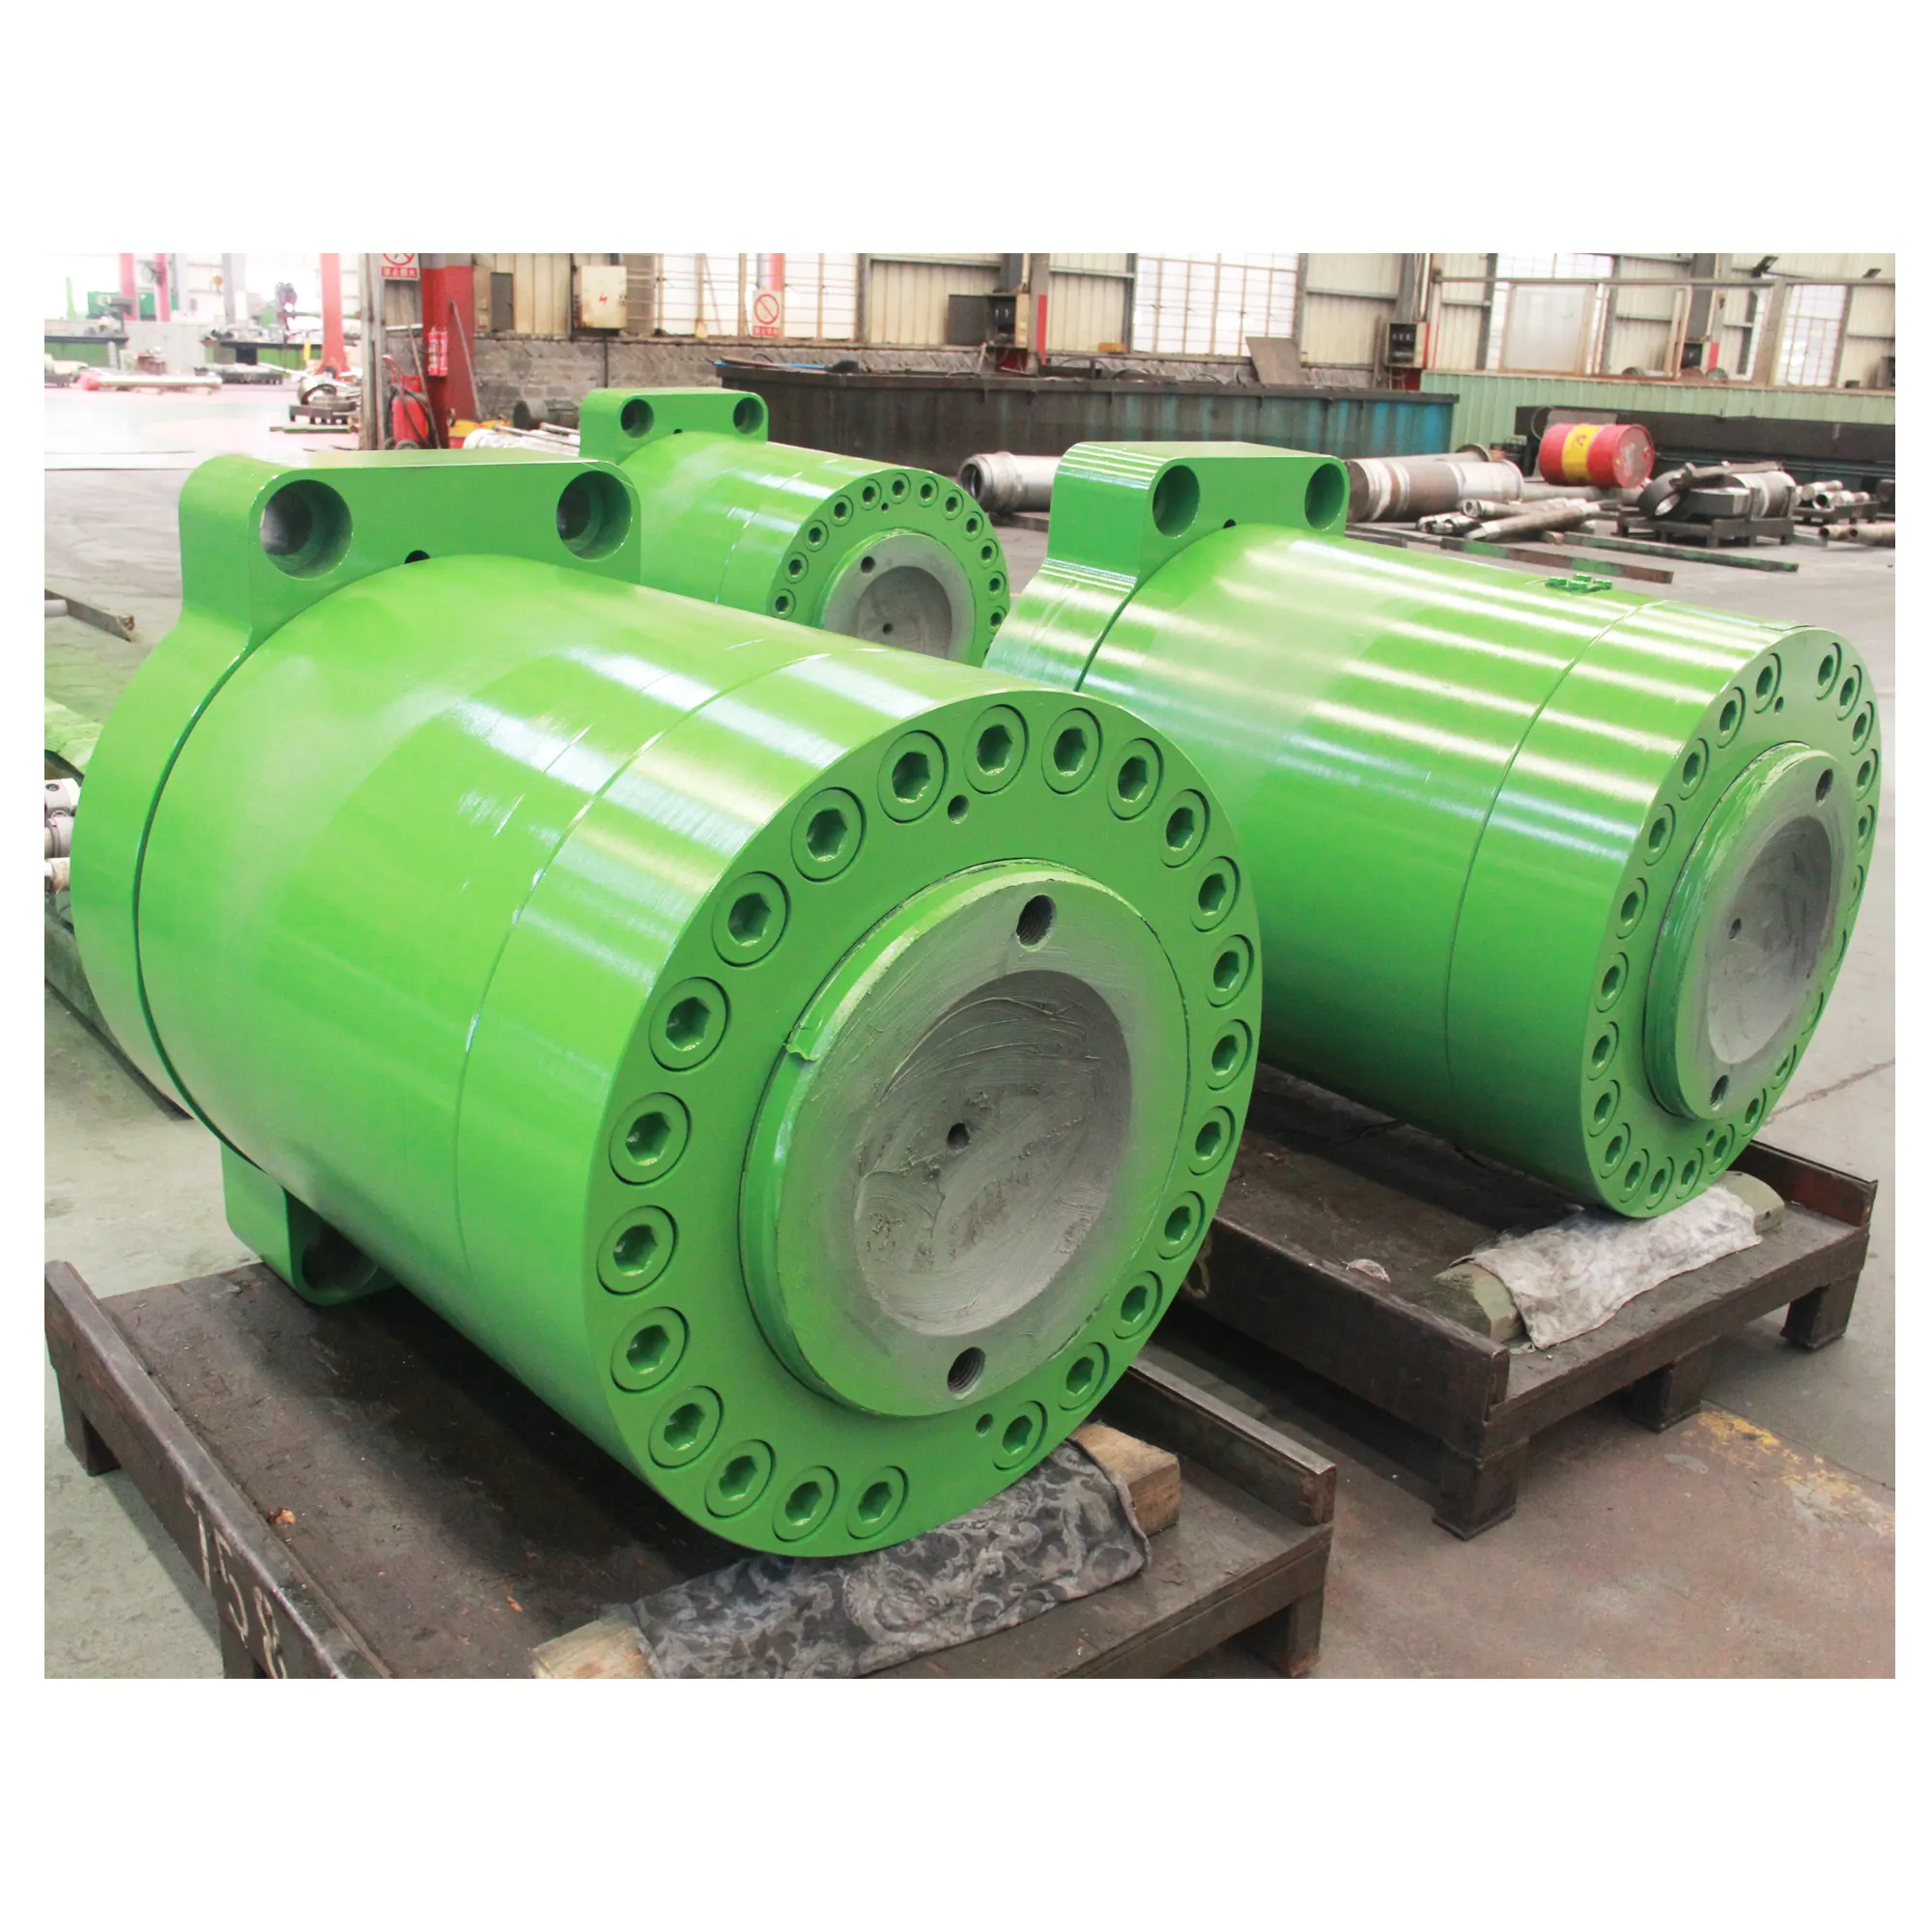 CNC métallurgie acier inoxydable usine de fabrication robuste machine de coulée course réglable cylindre hydraulique